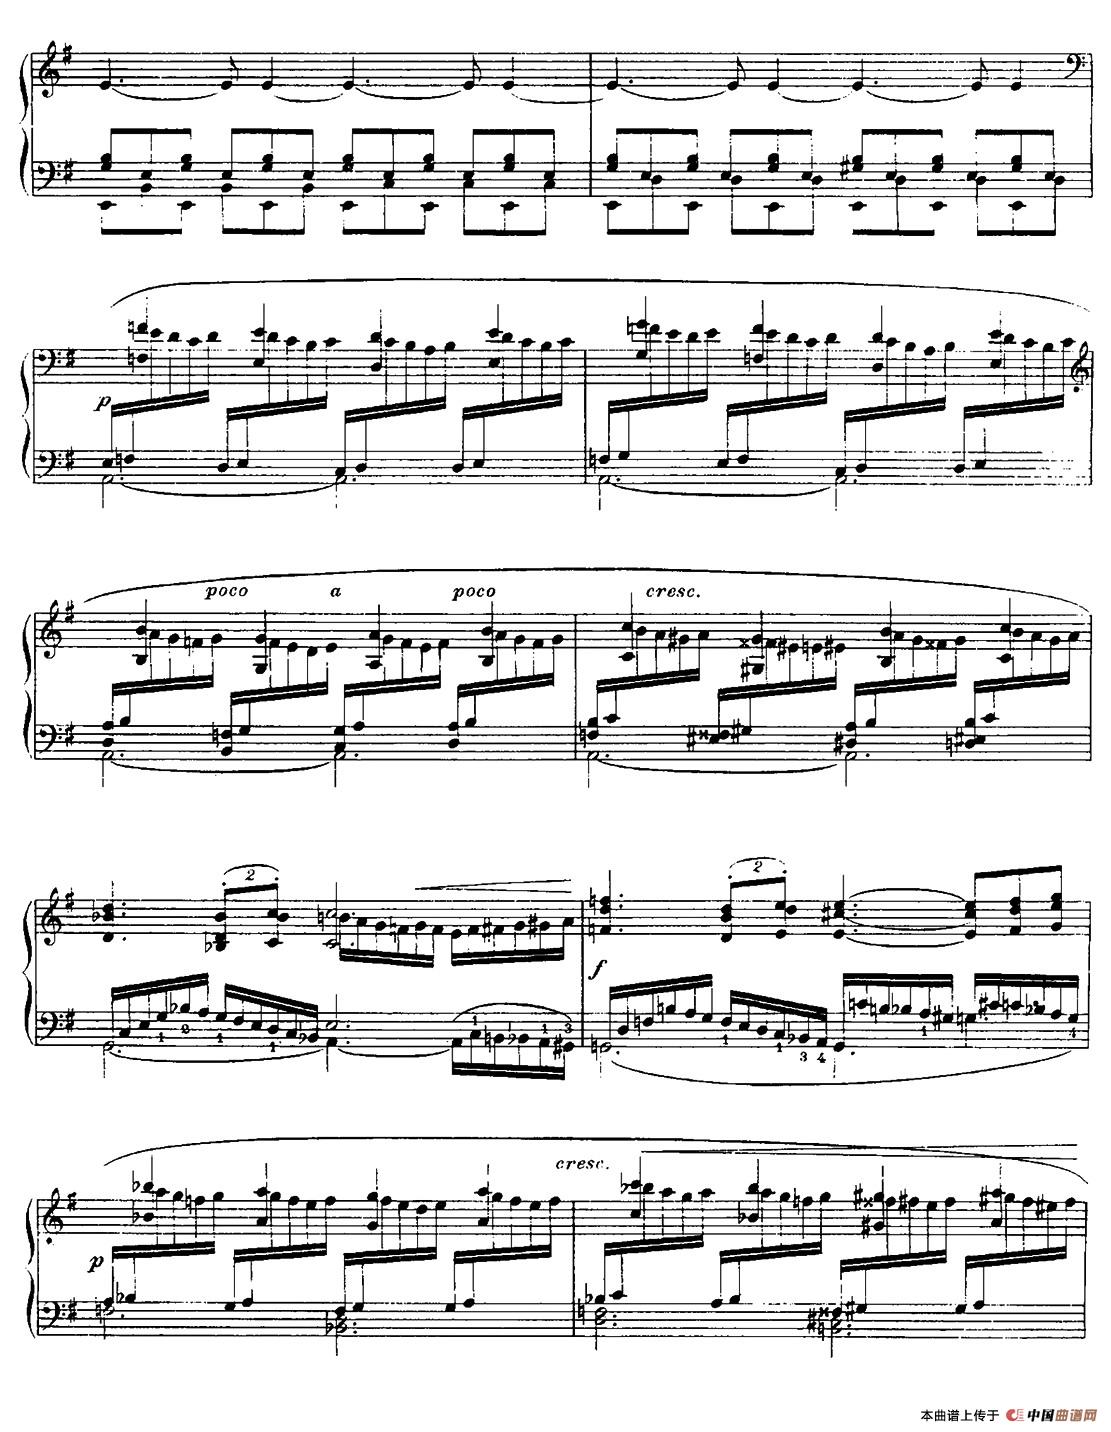 13 Nocturnes, Nocturne No. 12 in E minor （Op.107）(1)_003.jpg